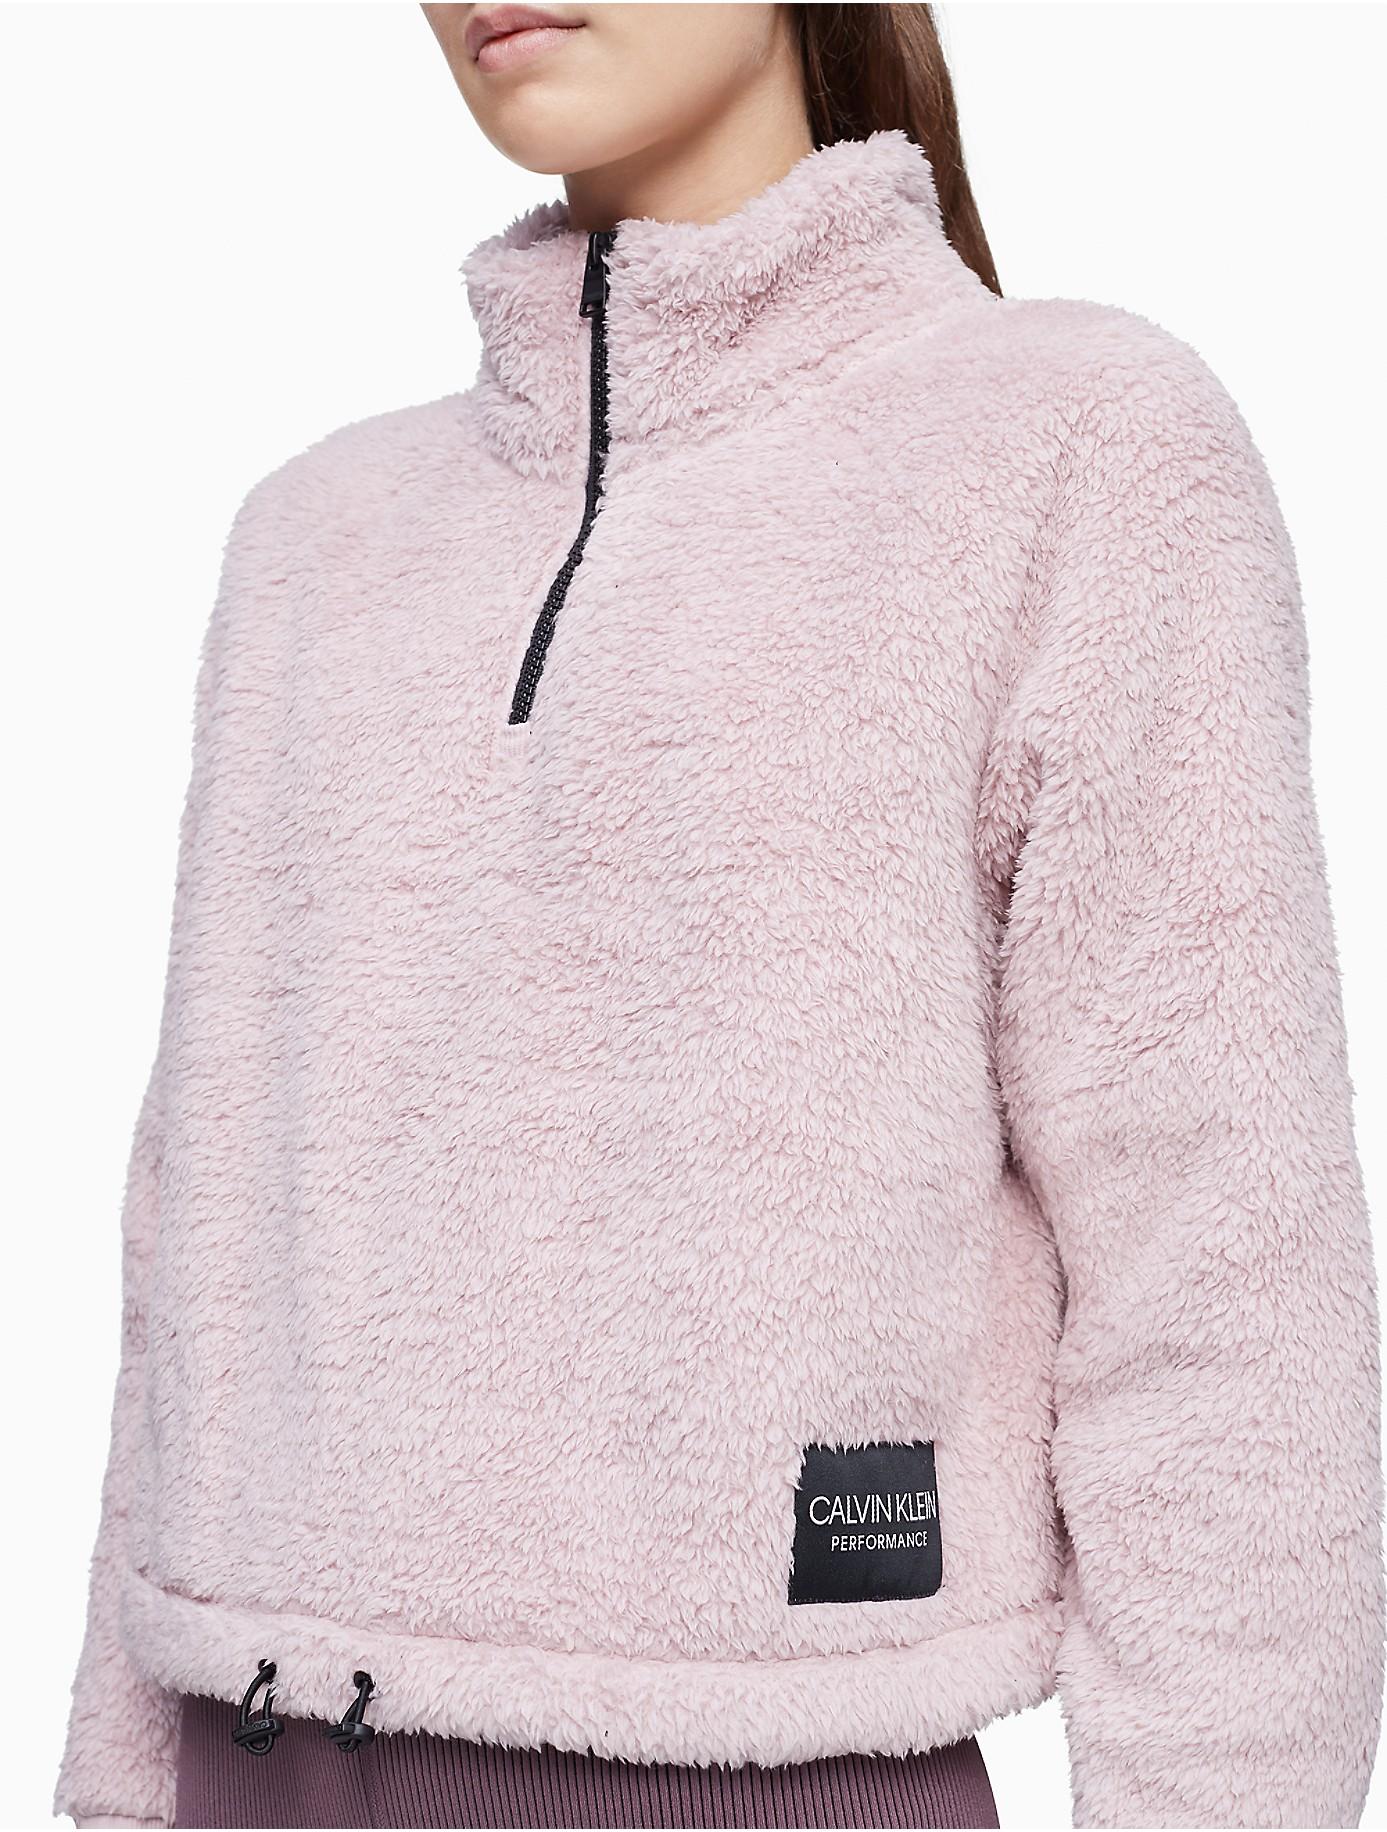 Calvin Klein Performance Fleece 1/4 Zip Cropped Sweatshirt | Lyst